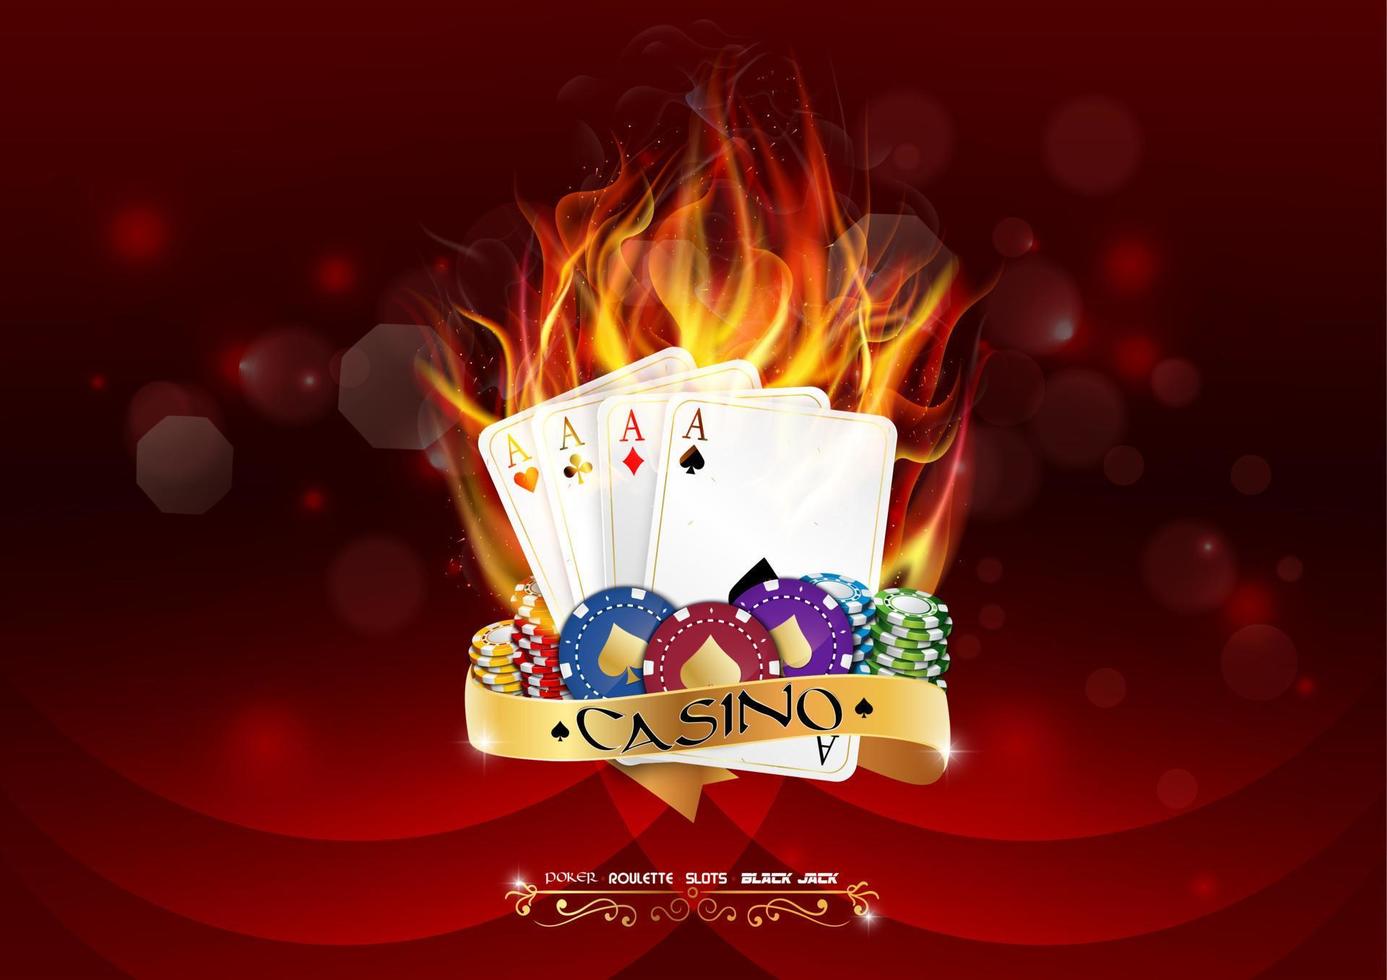 kasino poker baner med pommes frites och poker kort bränna i de brand på röd bakgrund vektor